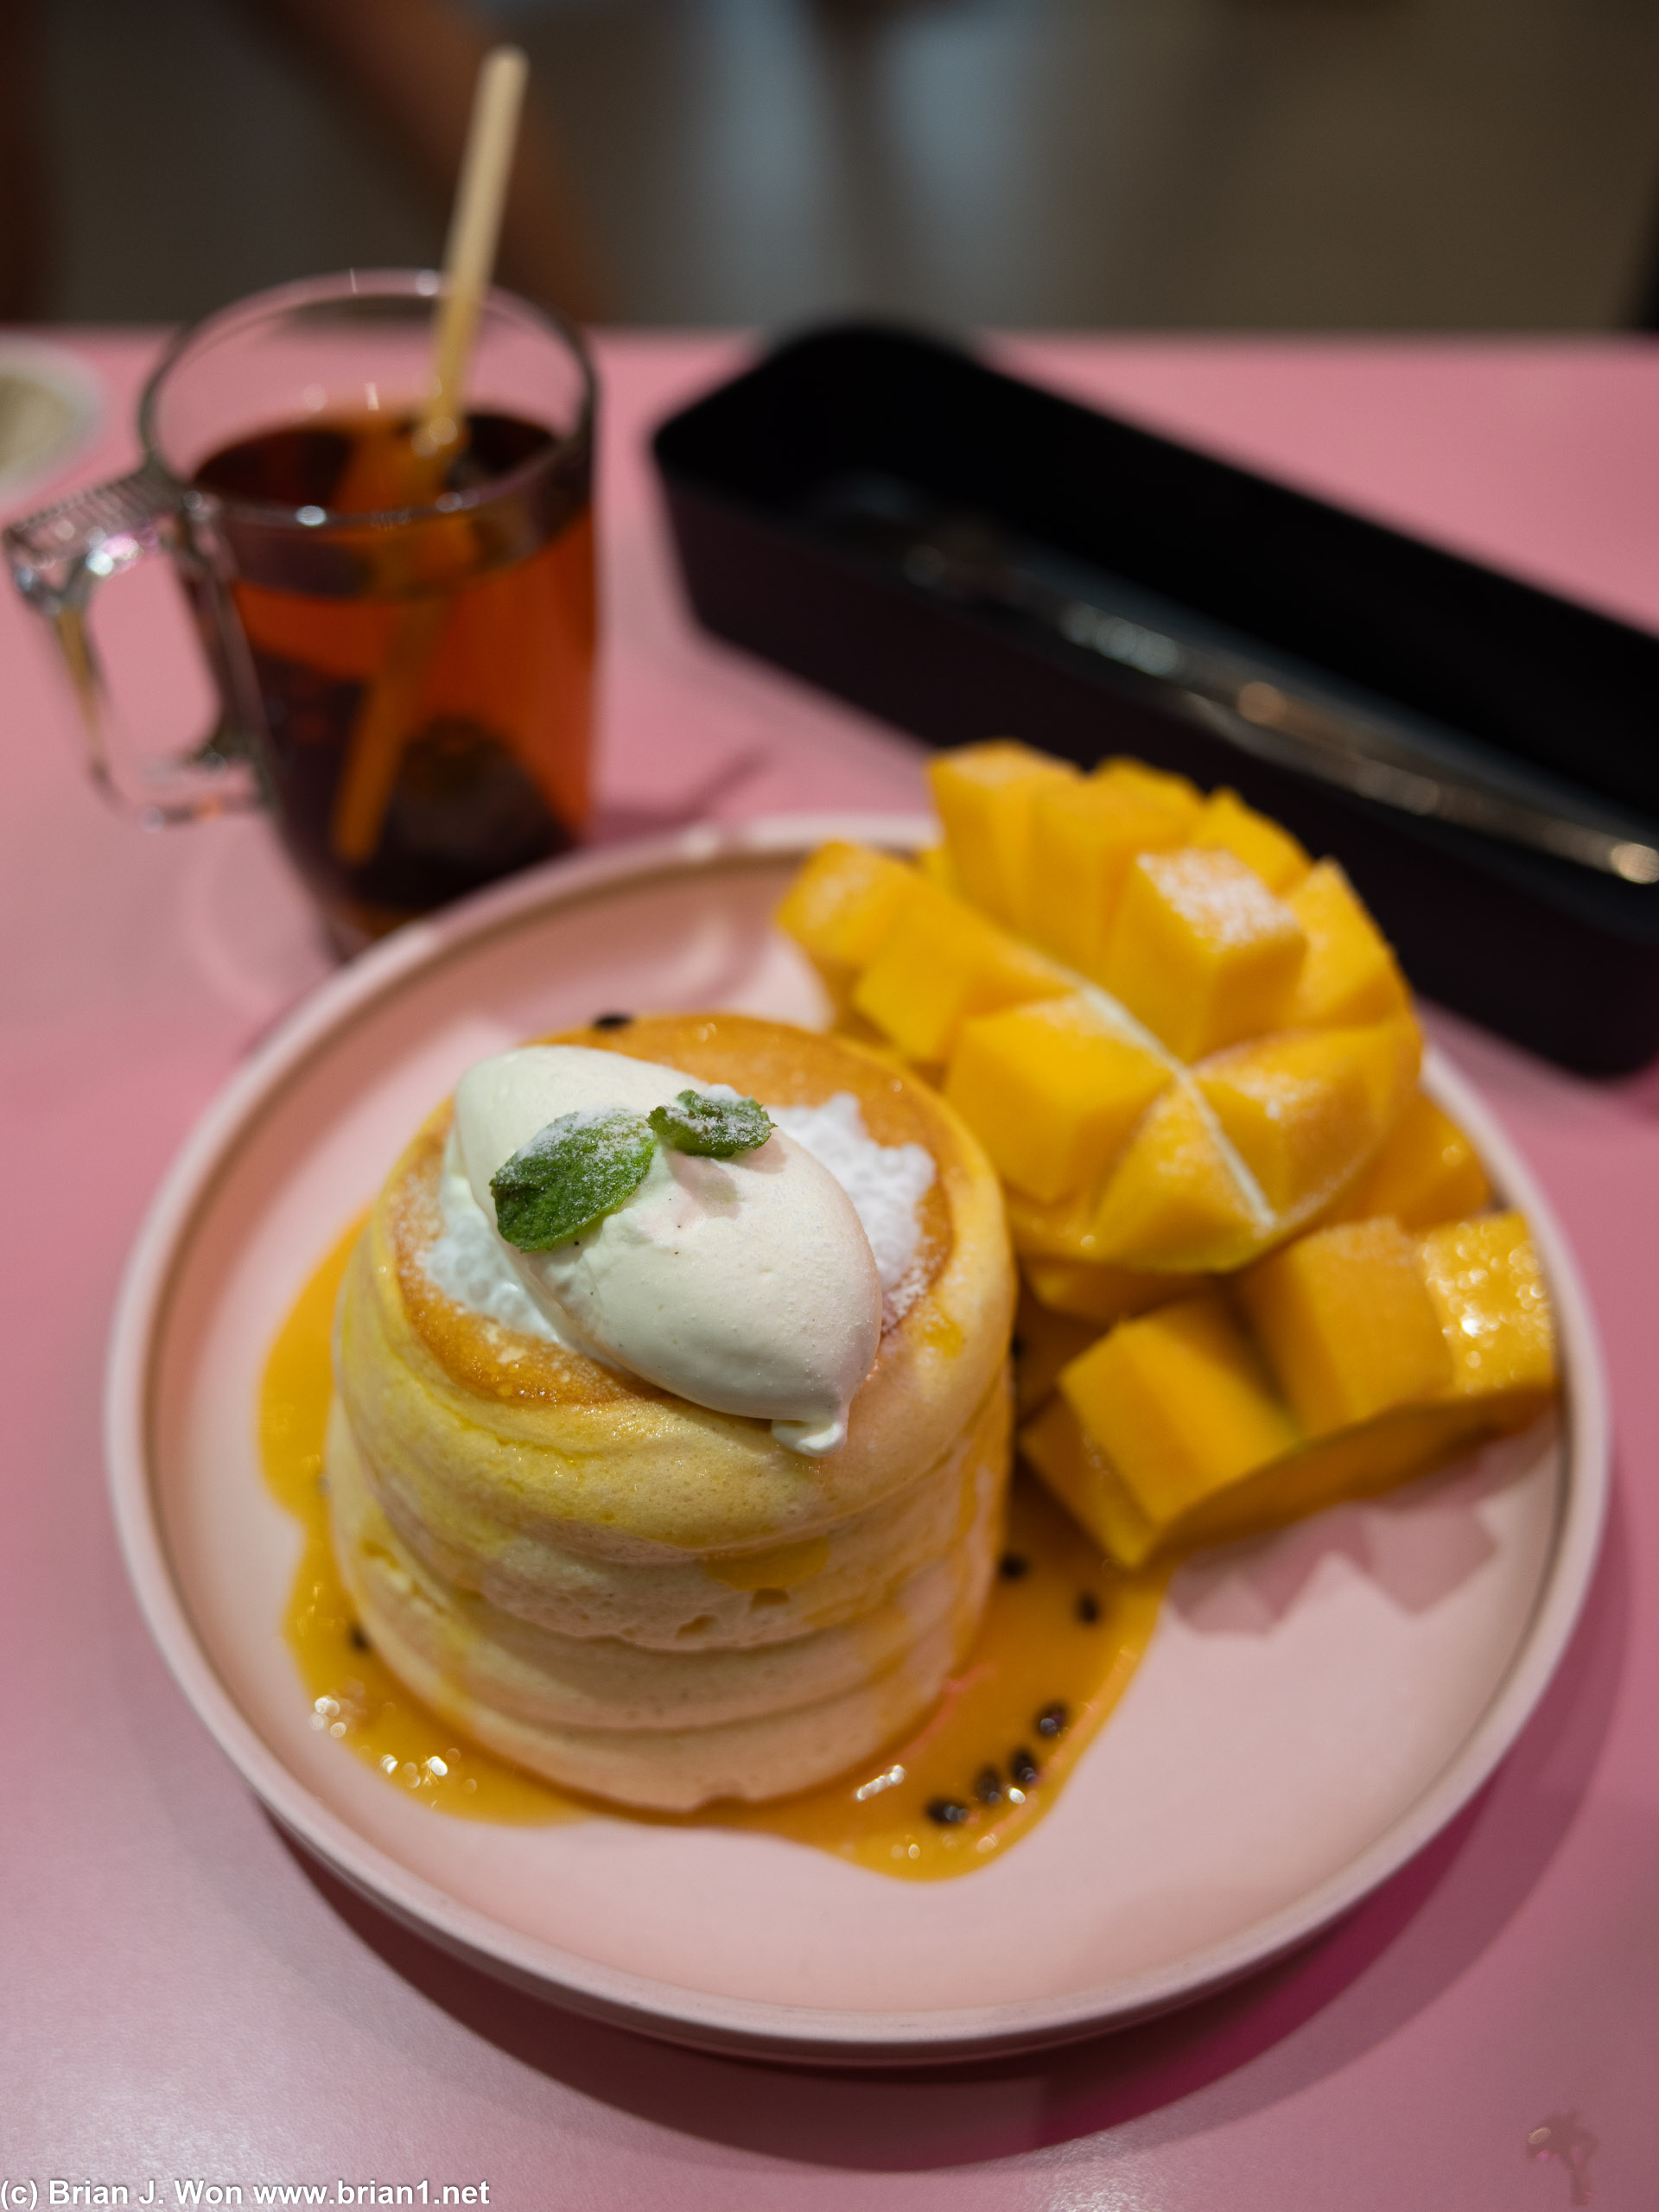 Mango passionfruit souffle pancakes. Nom nom nom!